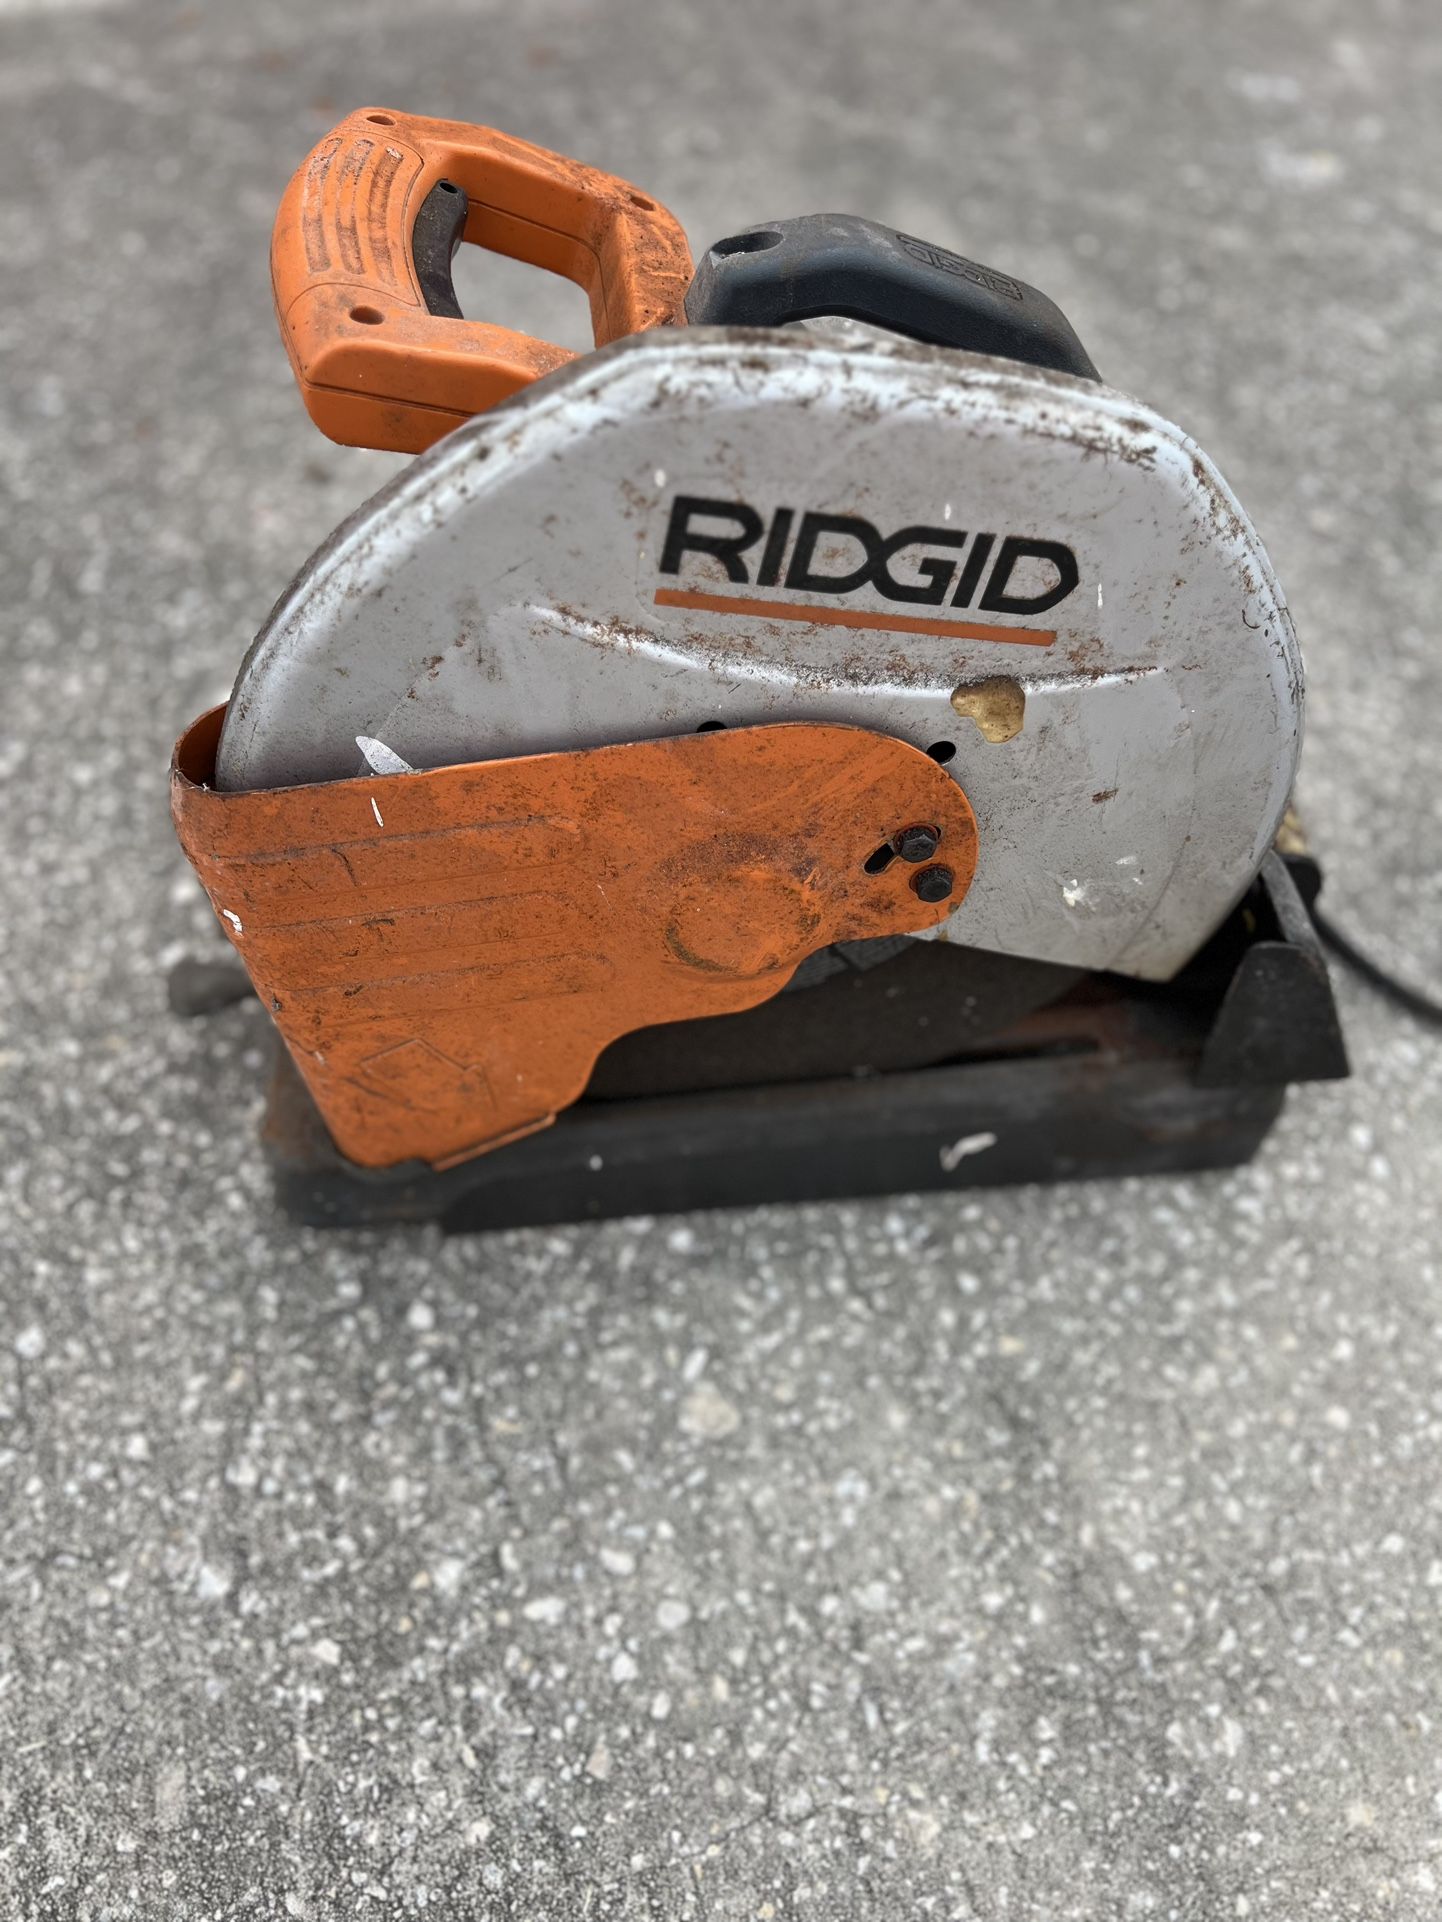 RIDGID 15 Amp 14 in. Abrasive Cut-Off Saw